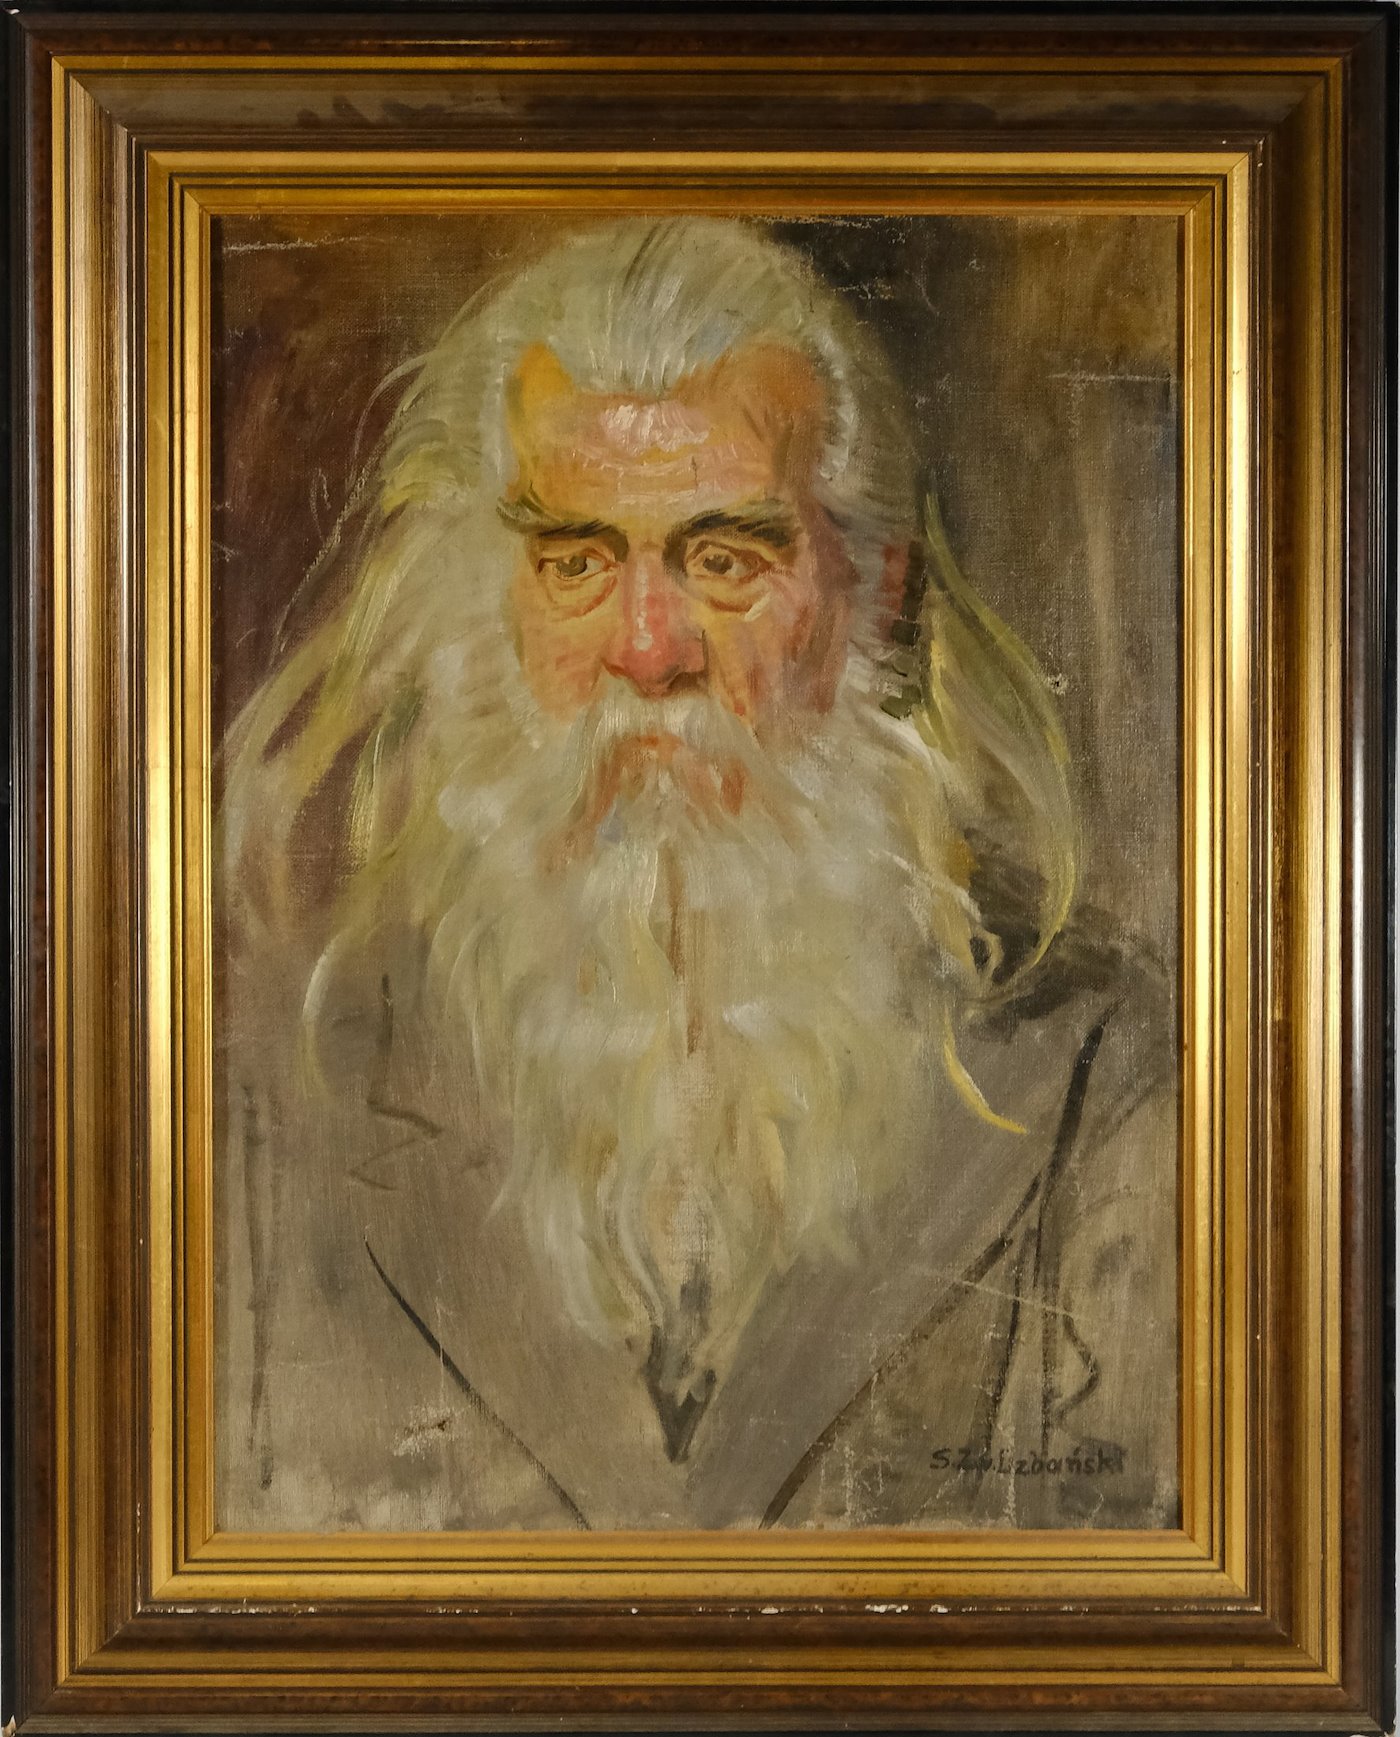 Sixtus Z. Von Dzbanski - Portrét starce